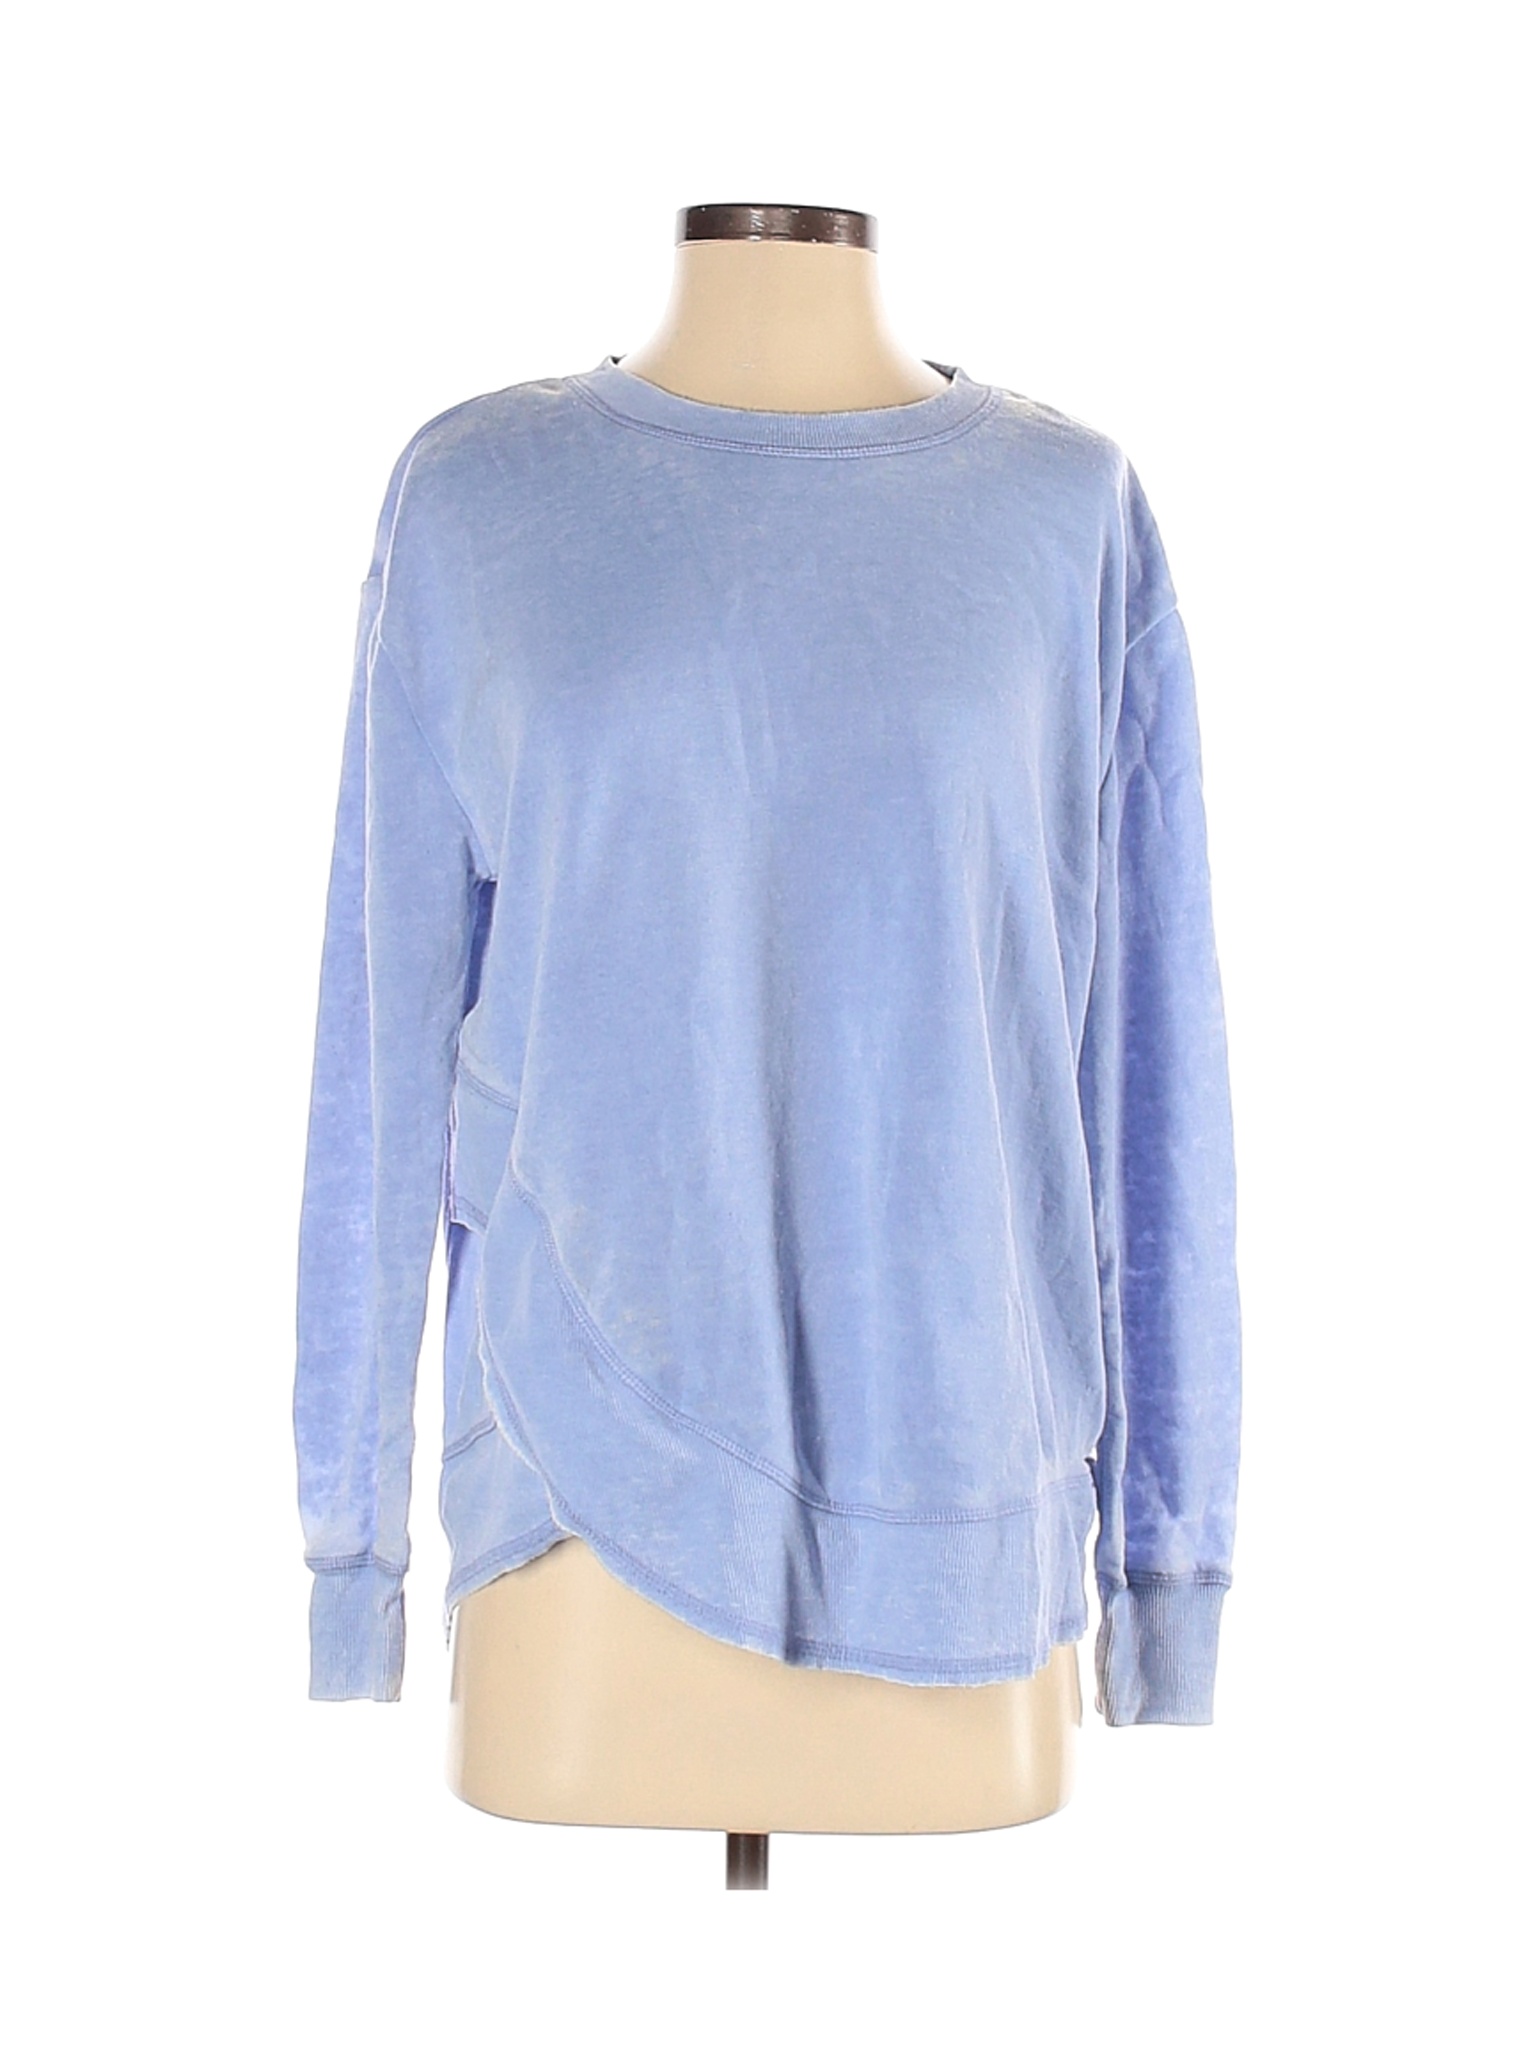 Ocean Drive Clothing Co. Women Blue Sweatshirt S | eBay